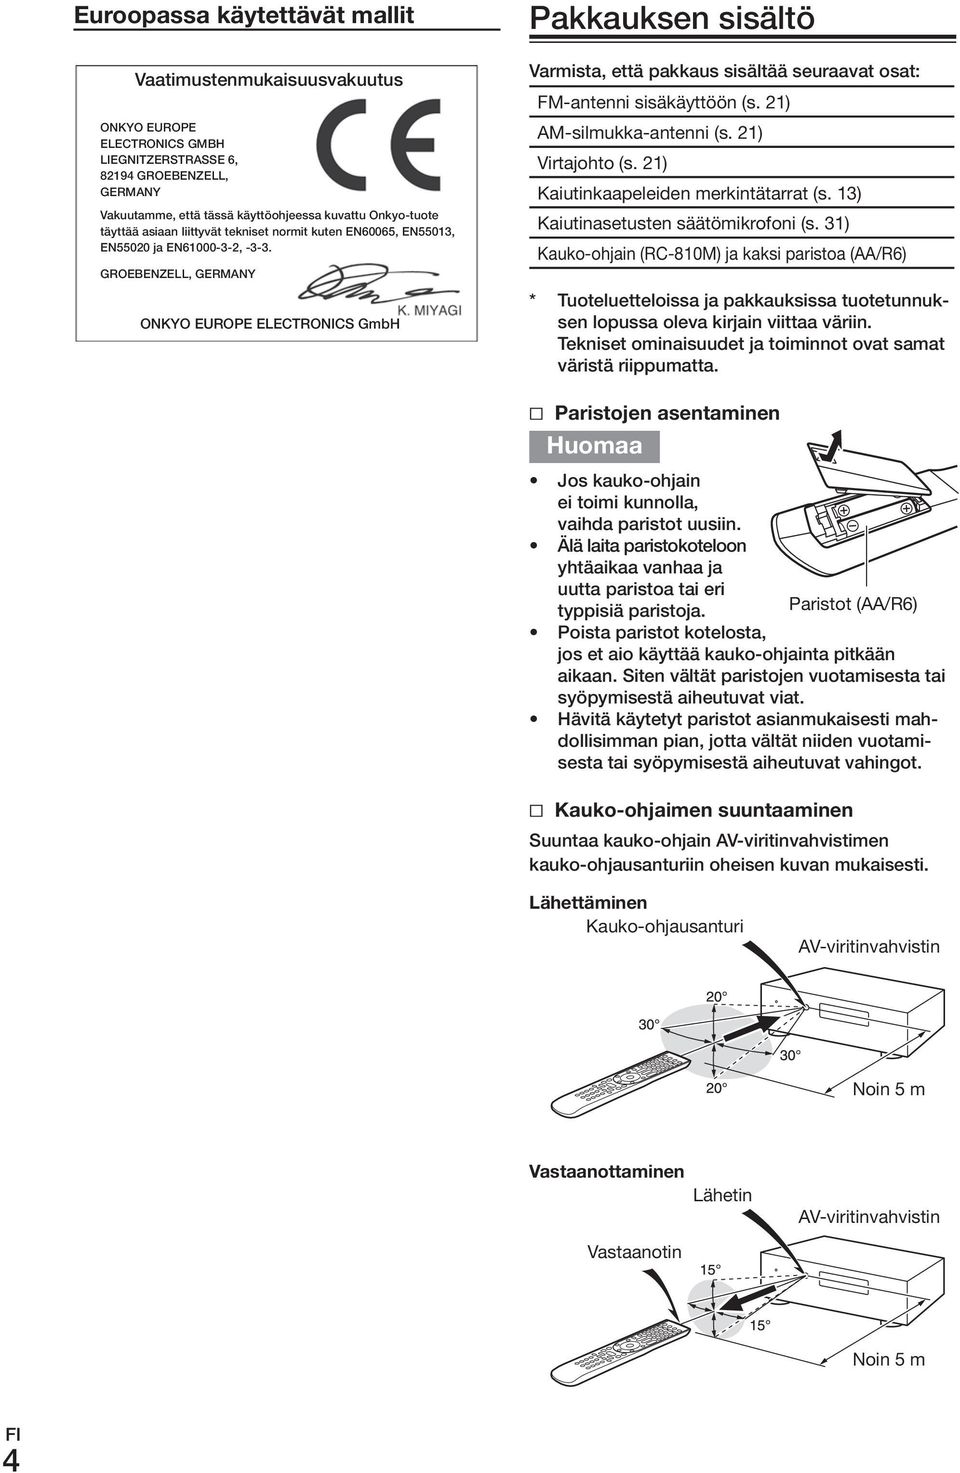 GroEBENzELL, GErmANy onkyo EuroPE ELECTroNICS GmbH Pakkauksen sisältö Varmista, että pakkaus sisältää seuraavat osat: FM-antenni.sisäkäyttöön.(s..21) AM-silmukka-antenni.(s..21) Virtajohto.(s..21) Kaiutinkaapeleiden.